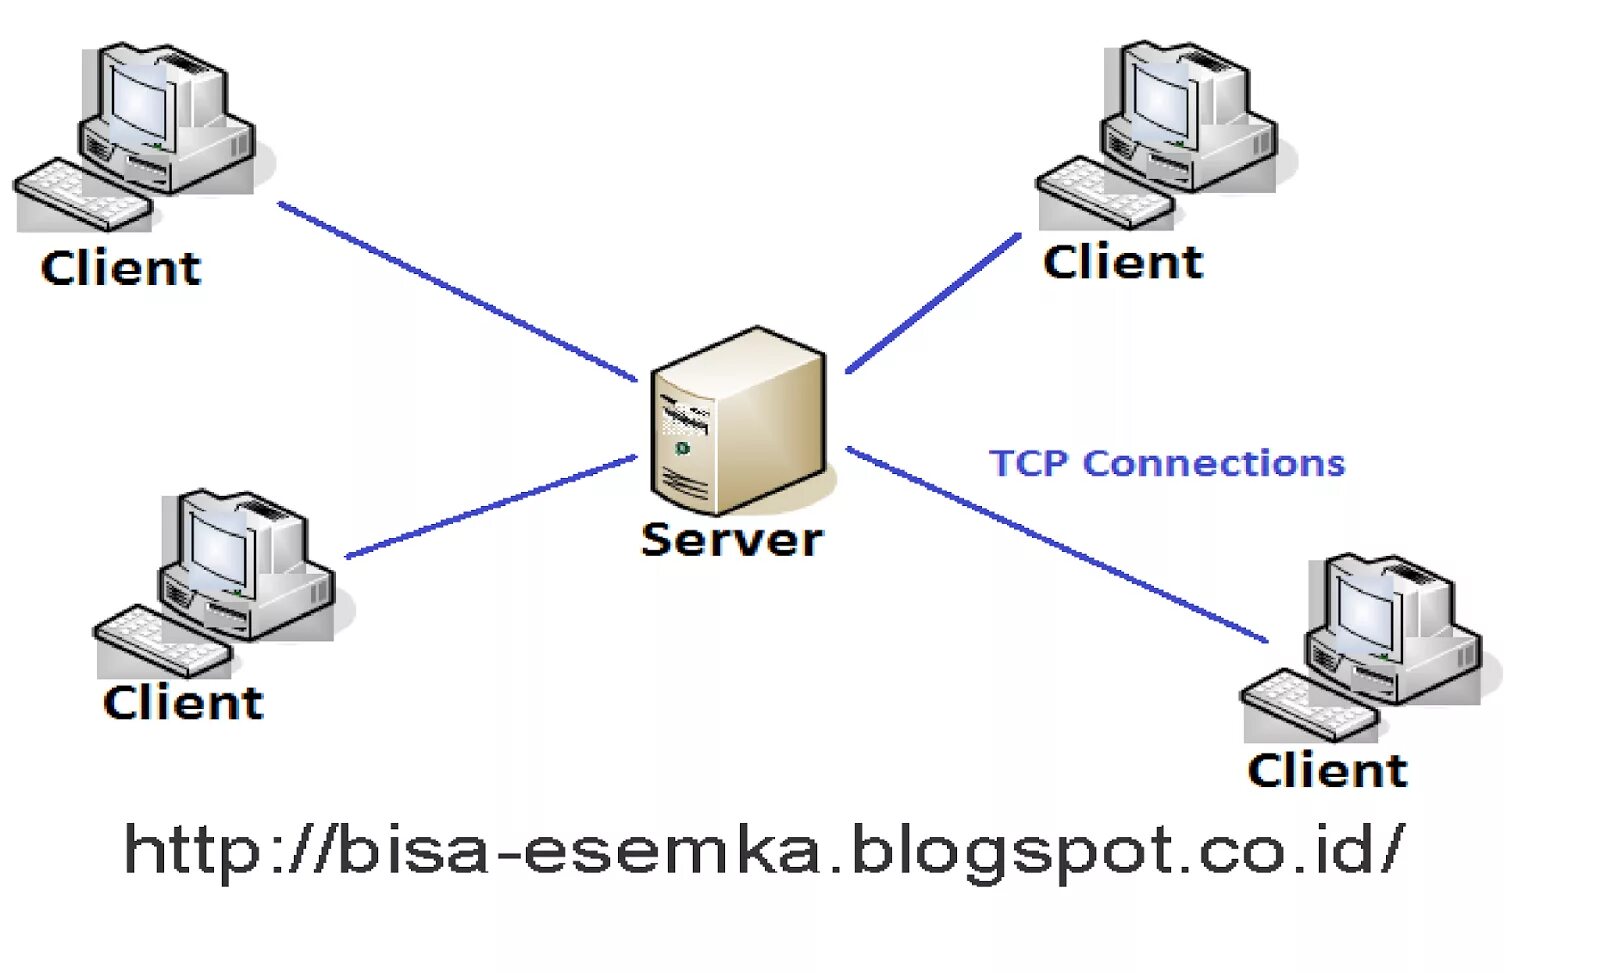 Модели архитектуры клиент-сервер. TCP архитектура клиент сервер. Схема клиент-серверной архитектуры. Технология клиент-сервер. Client 1